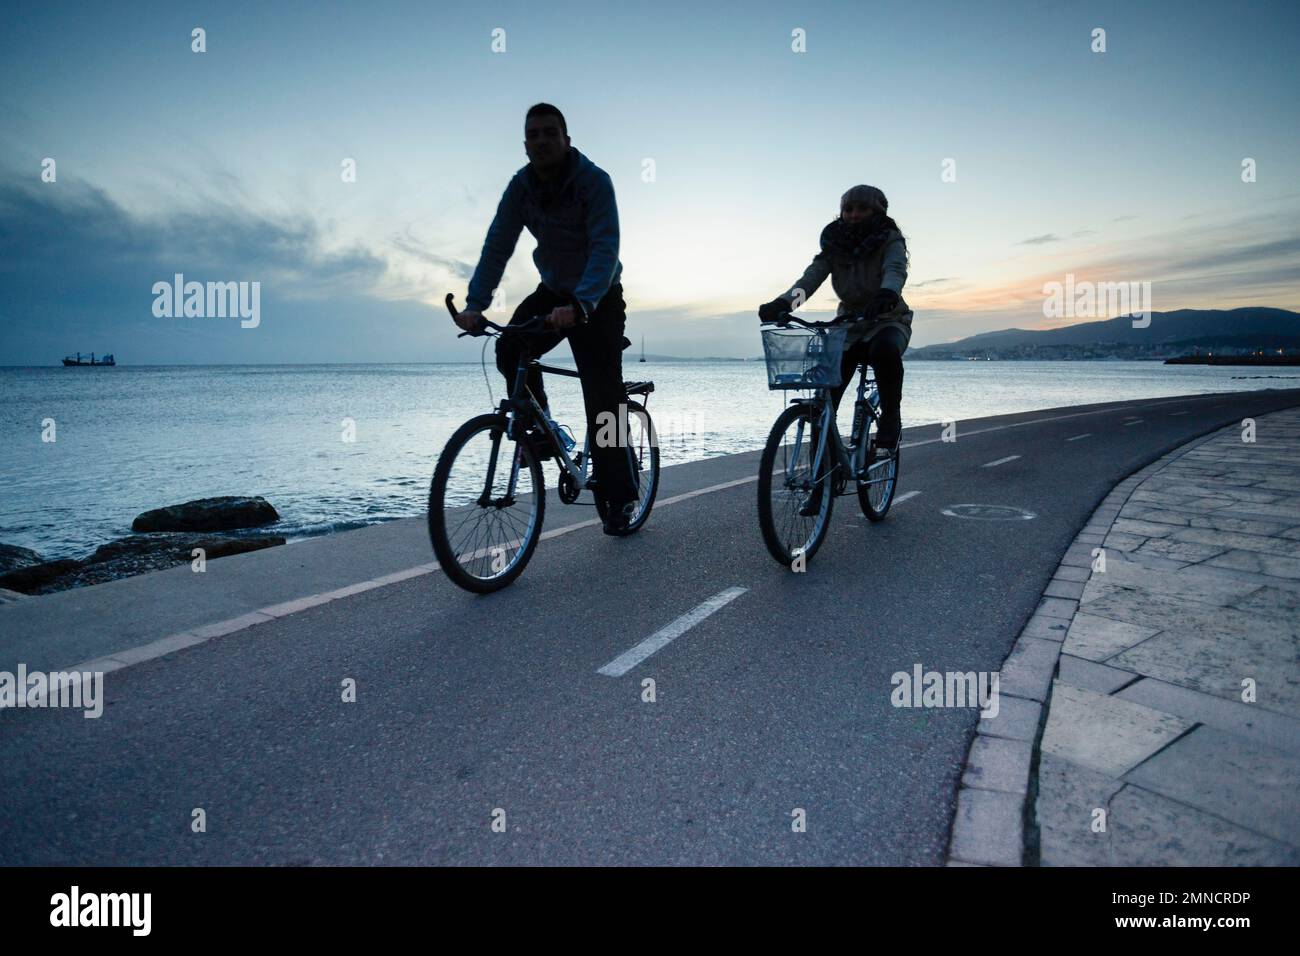 ciclistas, Paseo del Molinar, Palma, mallorca, islas baleares, españa, europa Stock Photo